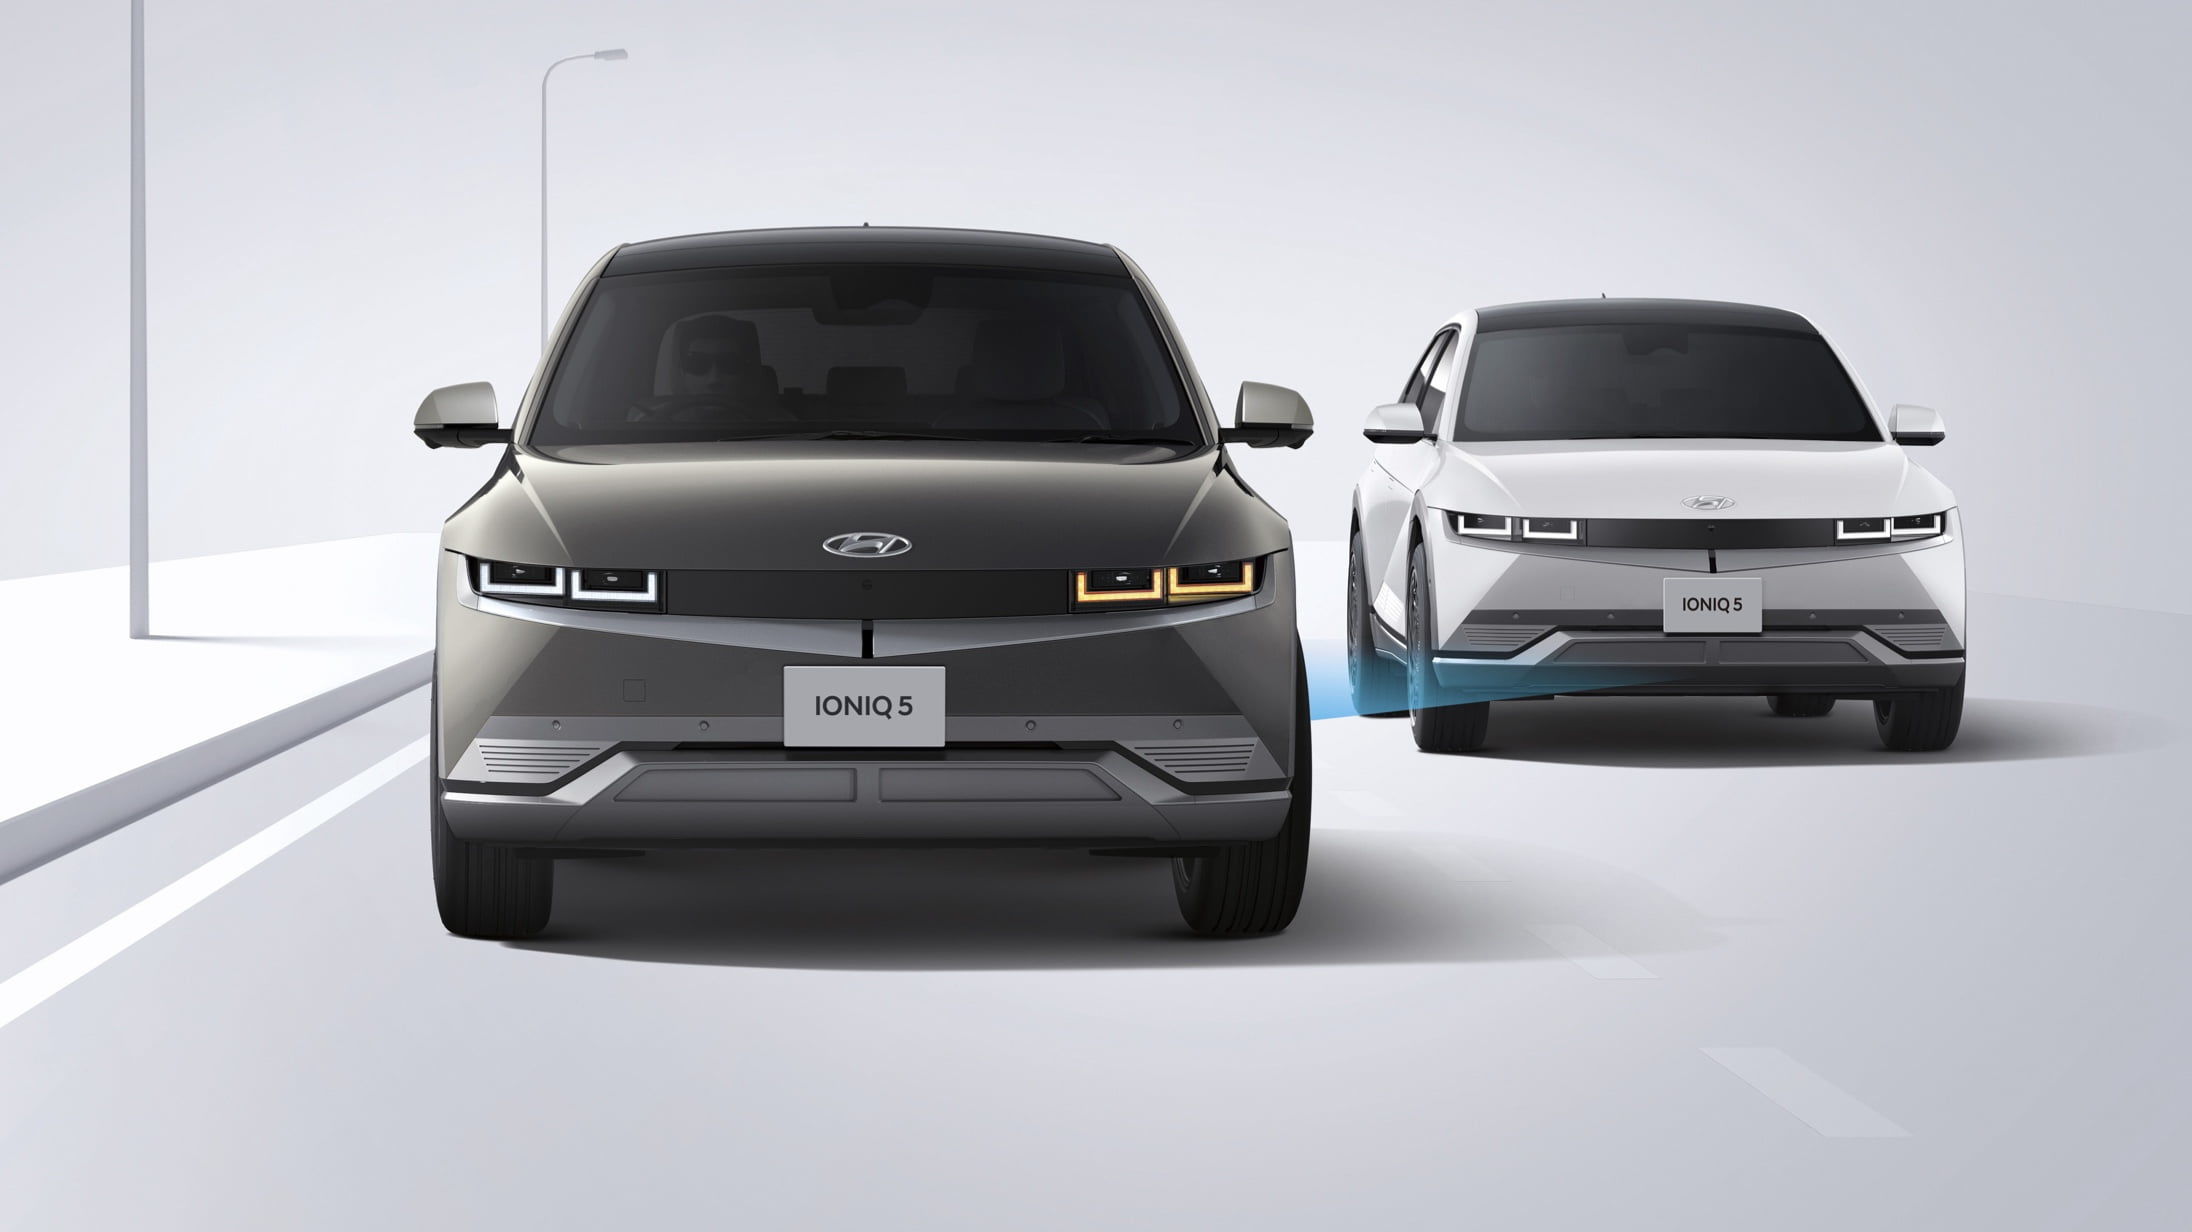 IONIQ 5 (アイオニック 5) 電気自動車 EV センサーシステム ブラインドスポットコリジョンアボイダンスアシスト - Hyundai Mobility Japan (ヒョンデモビリティジャパン)